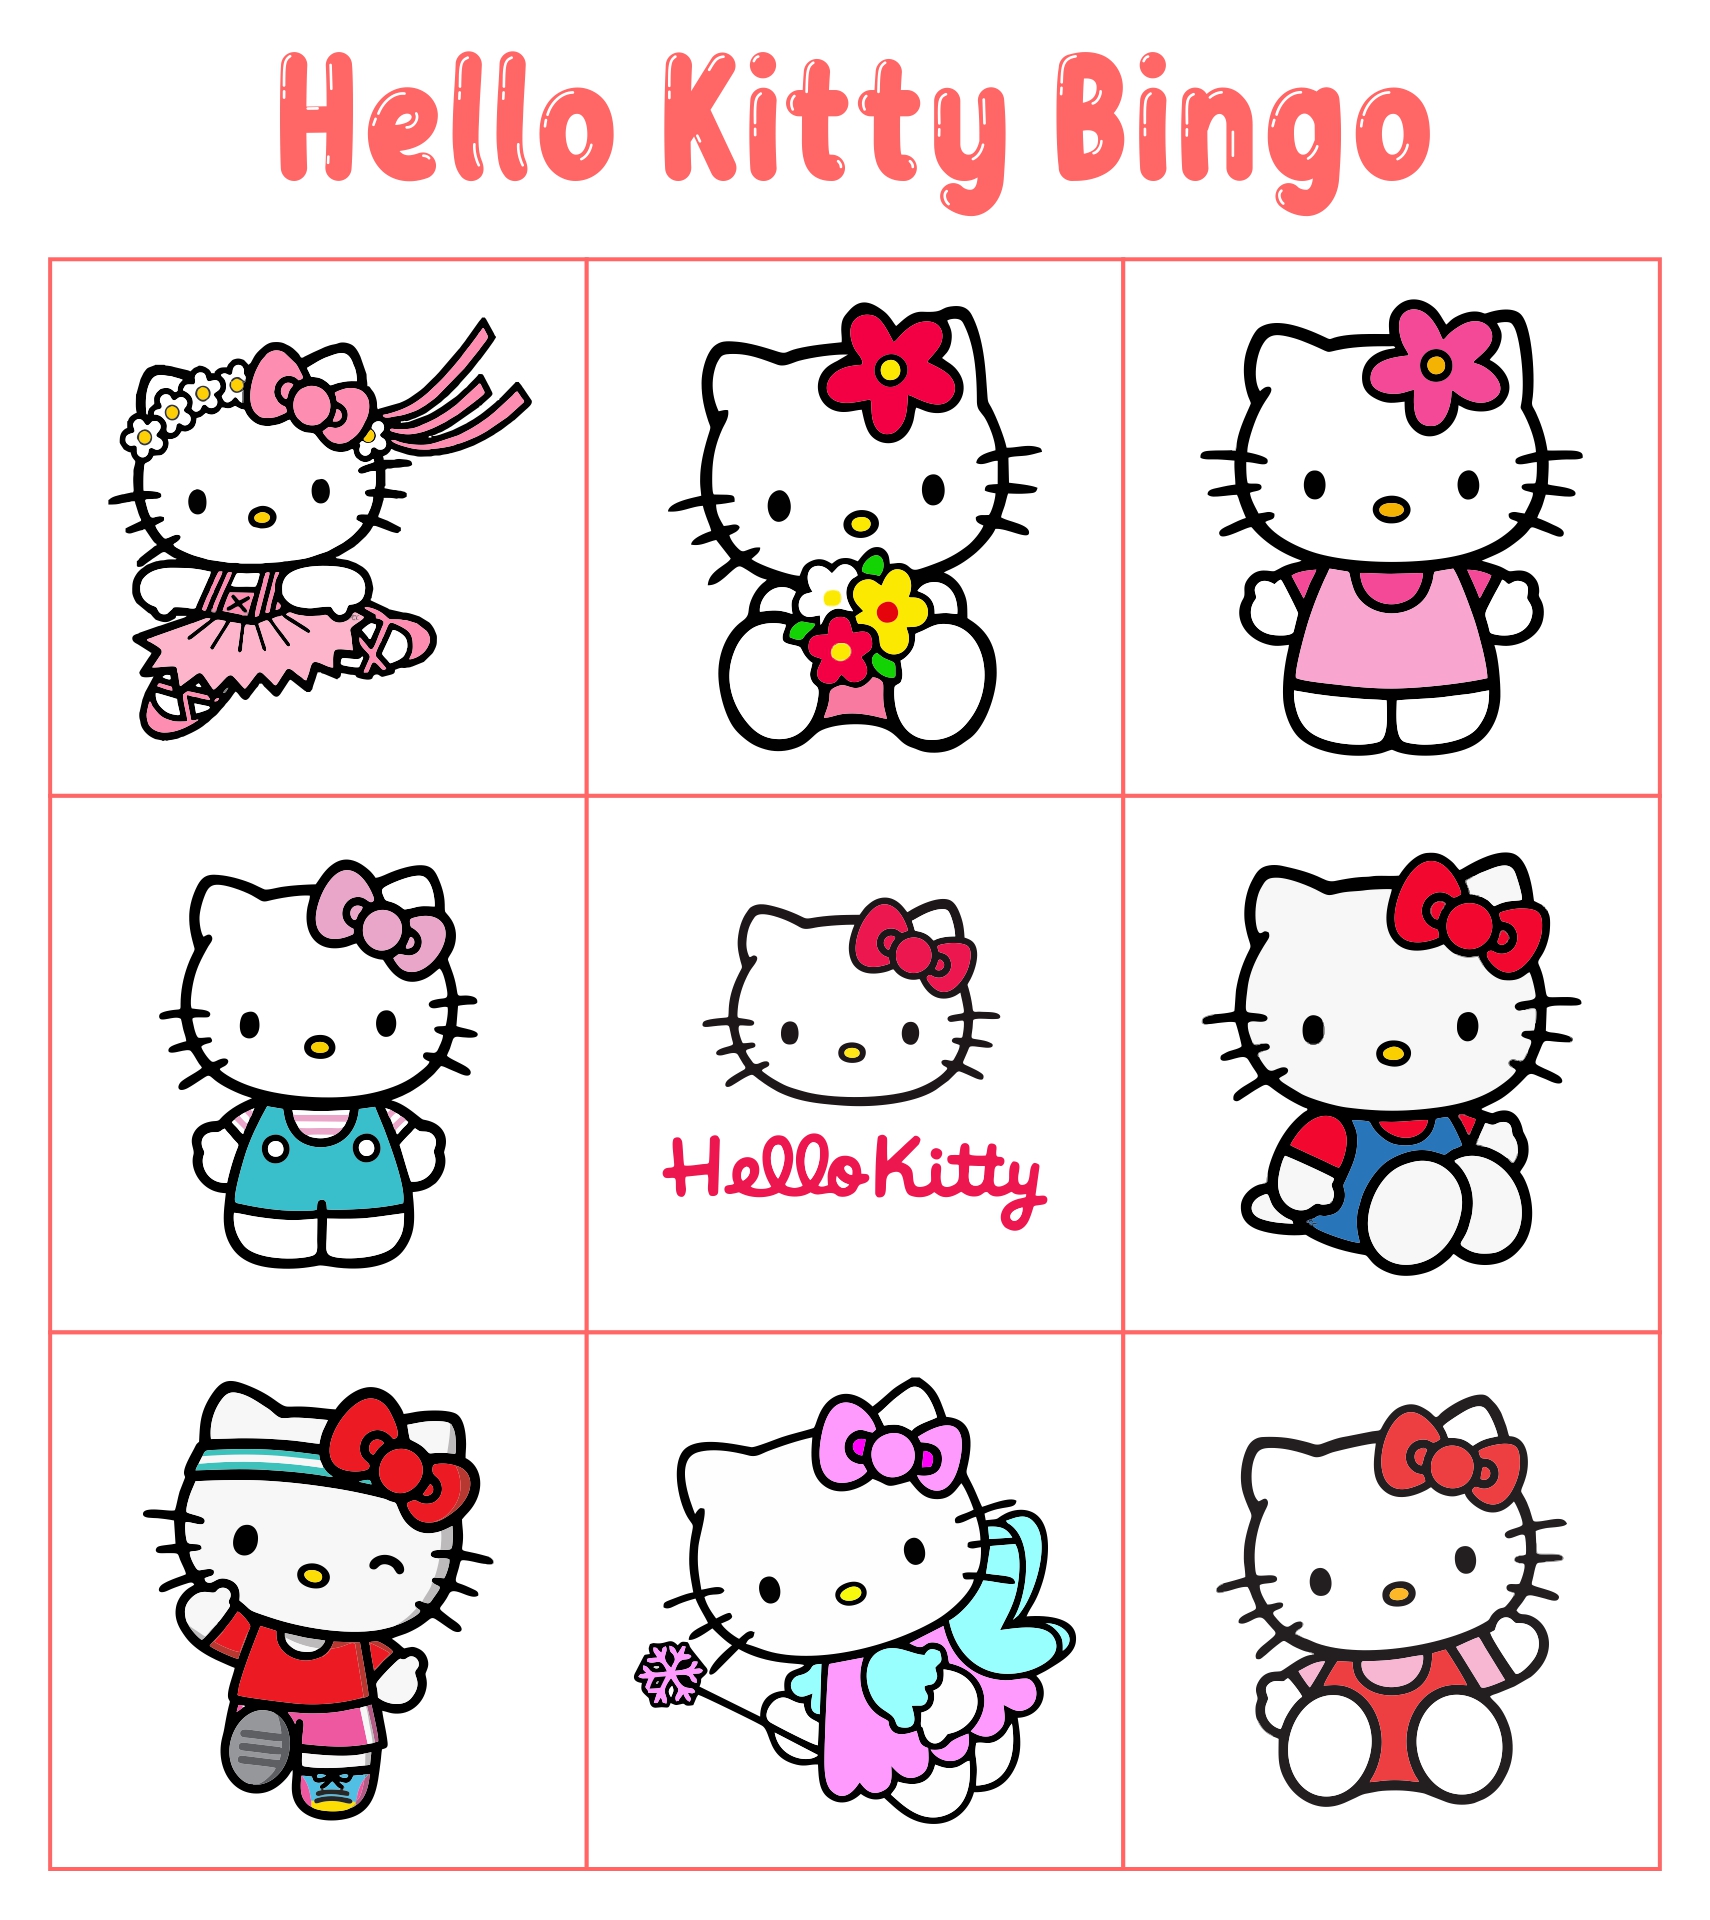 Printable Hello Kitty Birthday Party Games